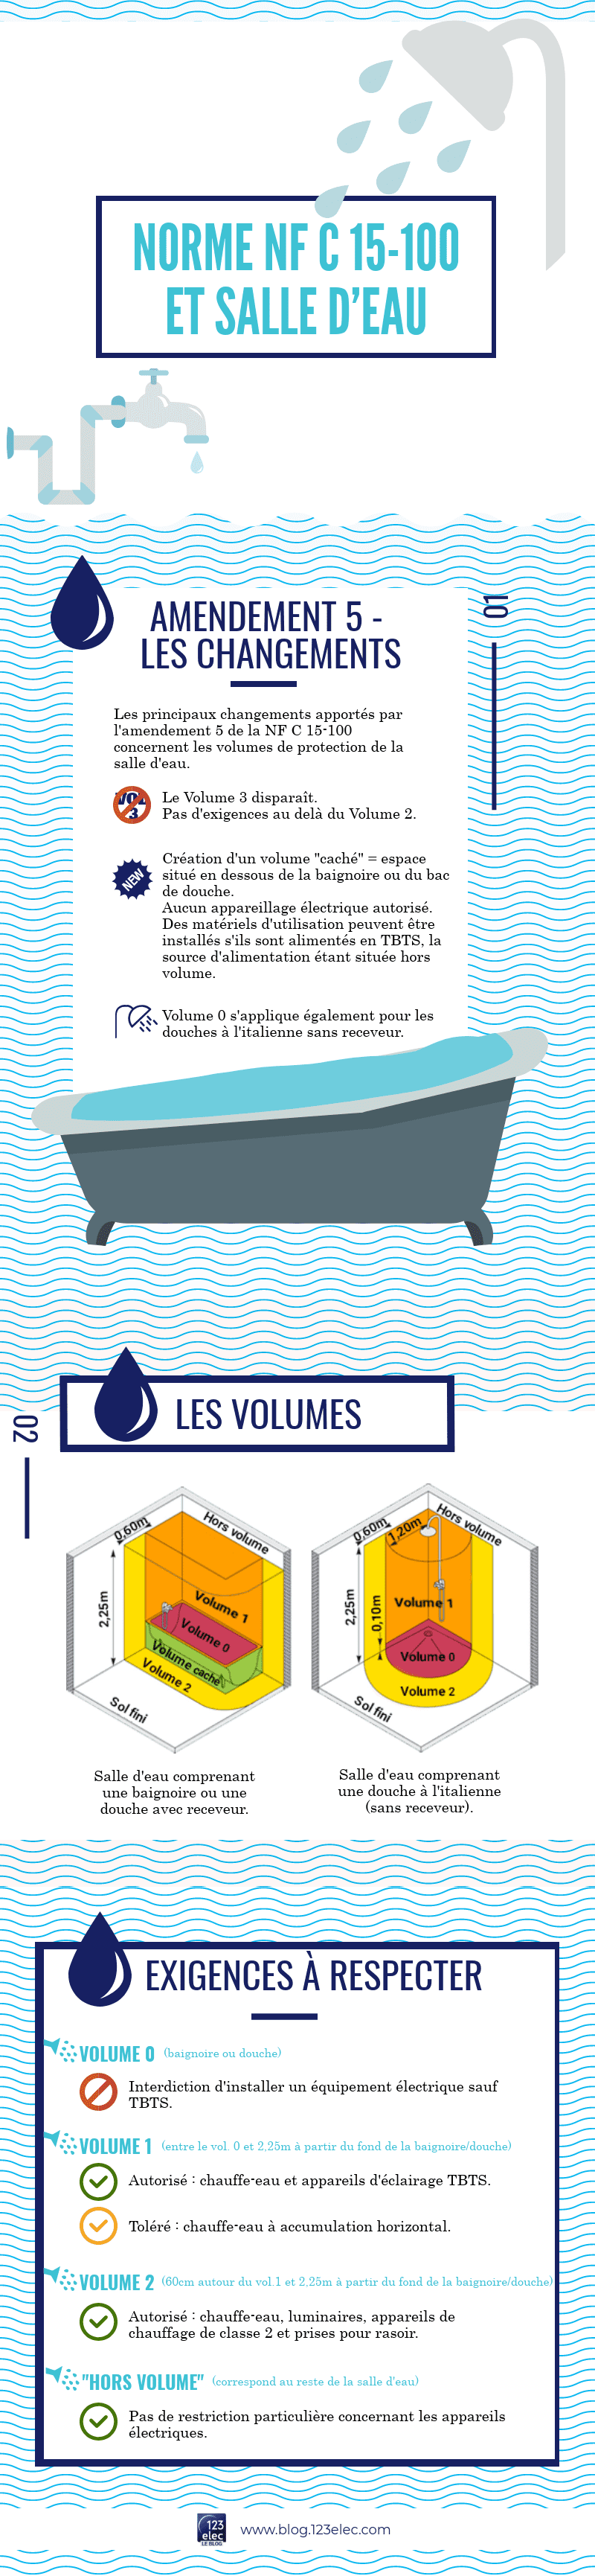 Infographie sur les exigences de la NF C 15-100 relatives à la salle d'eau